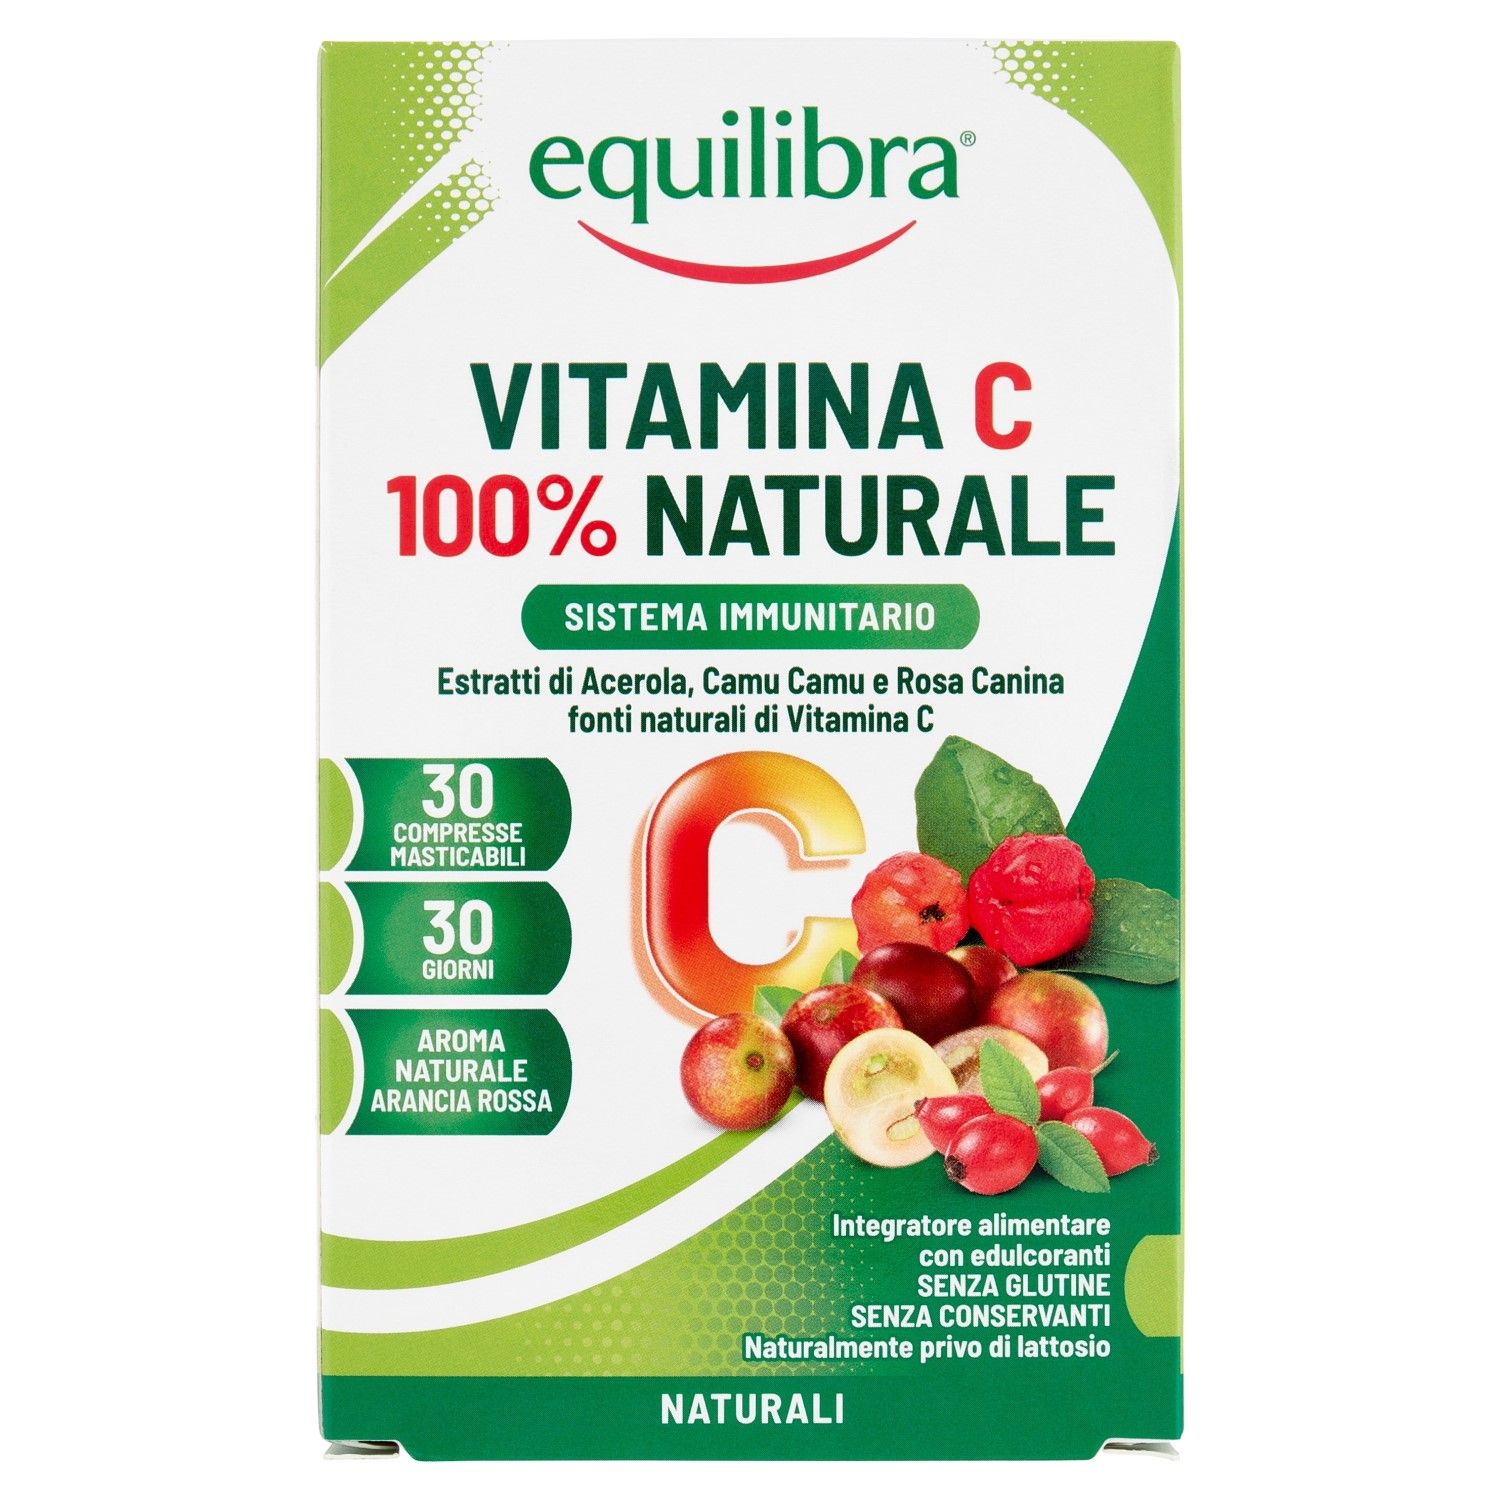 Equilibra Vitamina C 100% Naturale 30 Compresse Masticabili